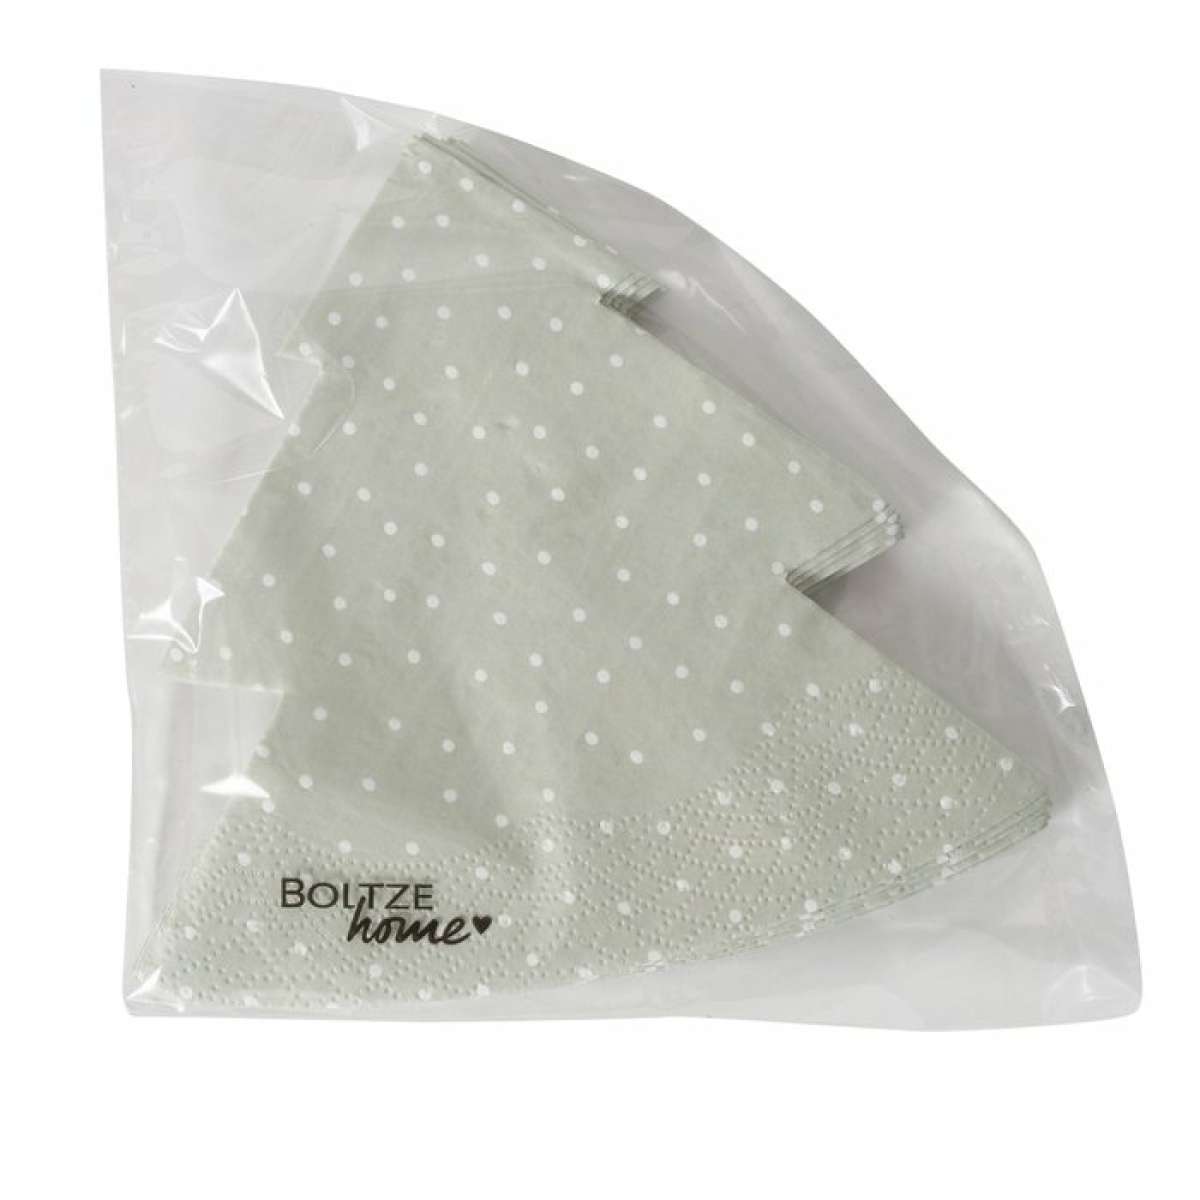 Immagine del prodotto Tovaglioli di Carta Grona a forma di Abete confezione (12) 16x16 cm (3 Colori) | Boltze